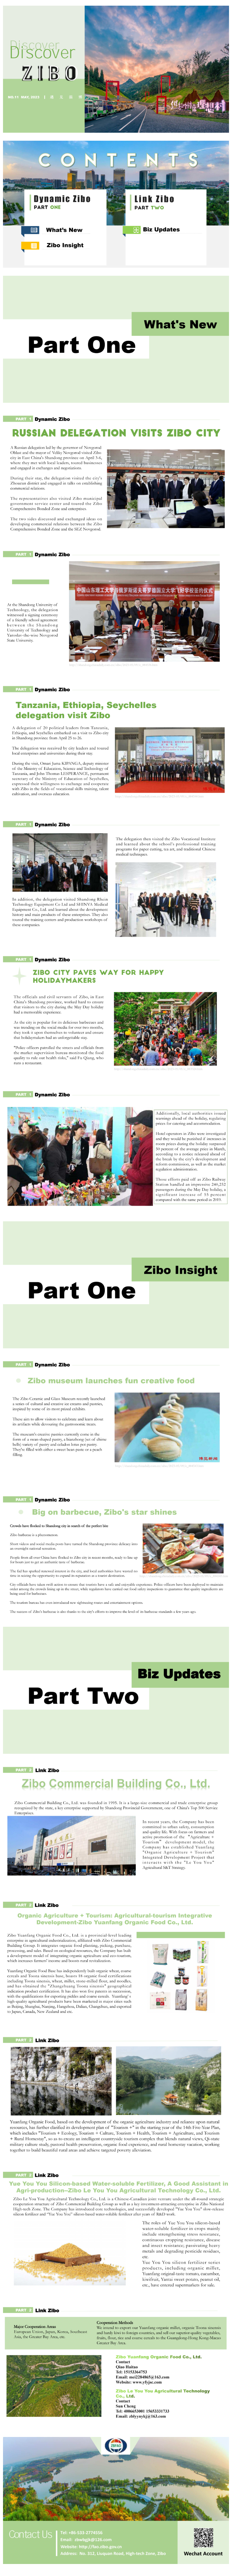 【电子期刊】遇见淄博 Discover Zibo 第十一期.png